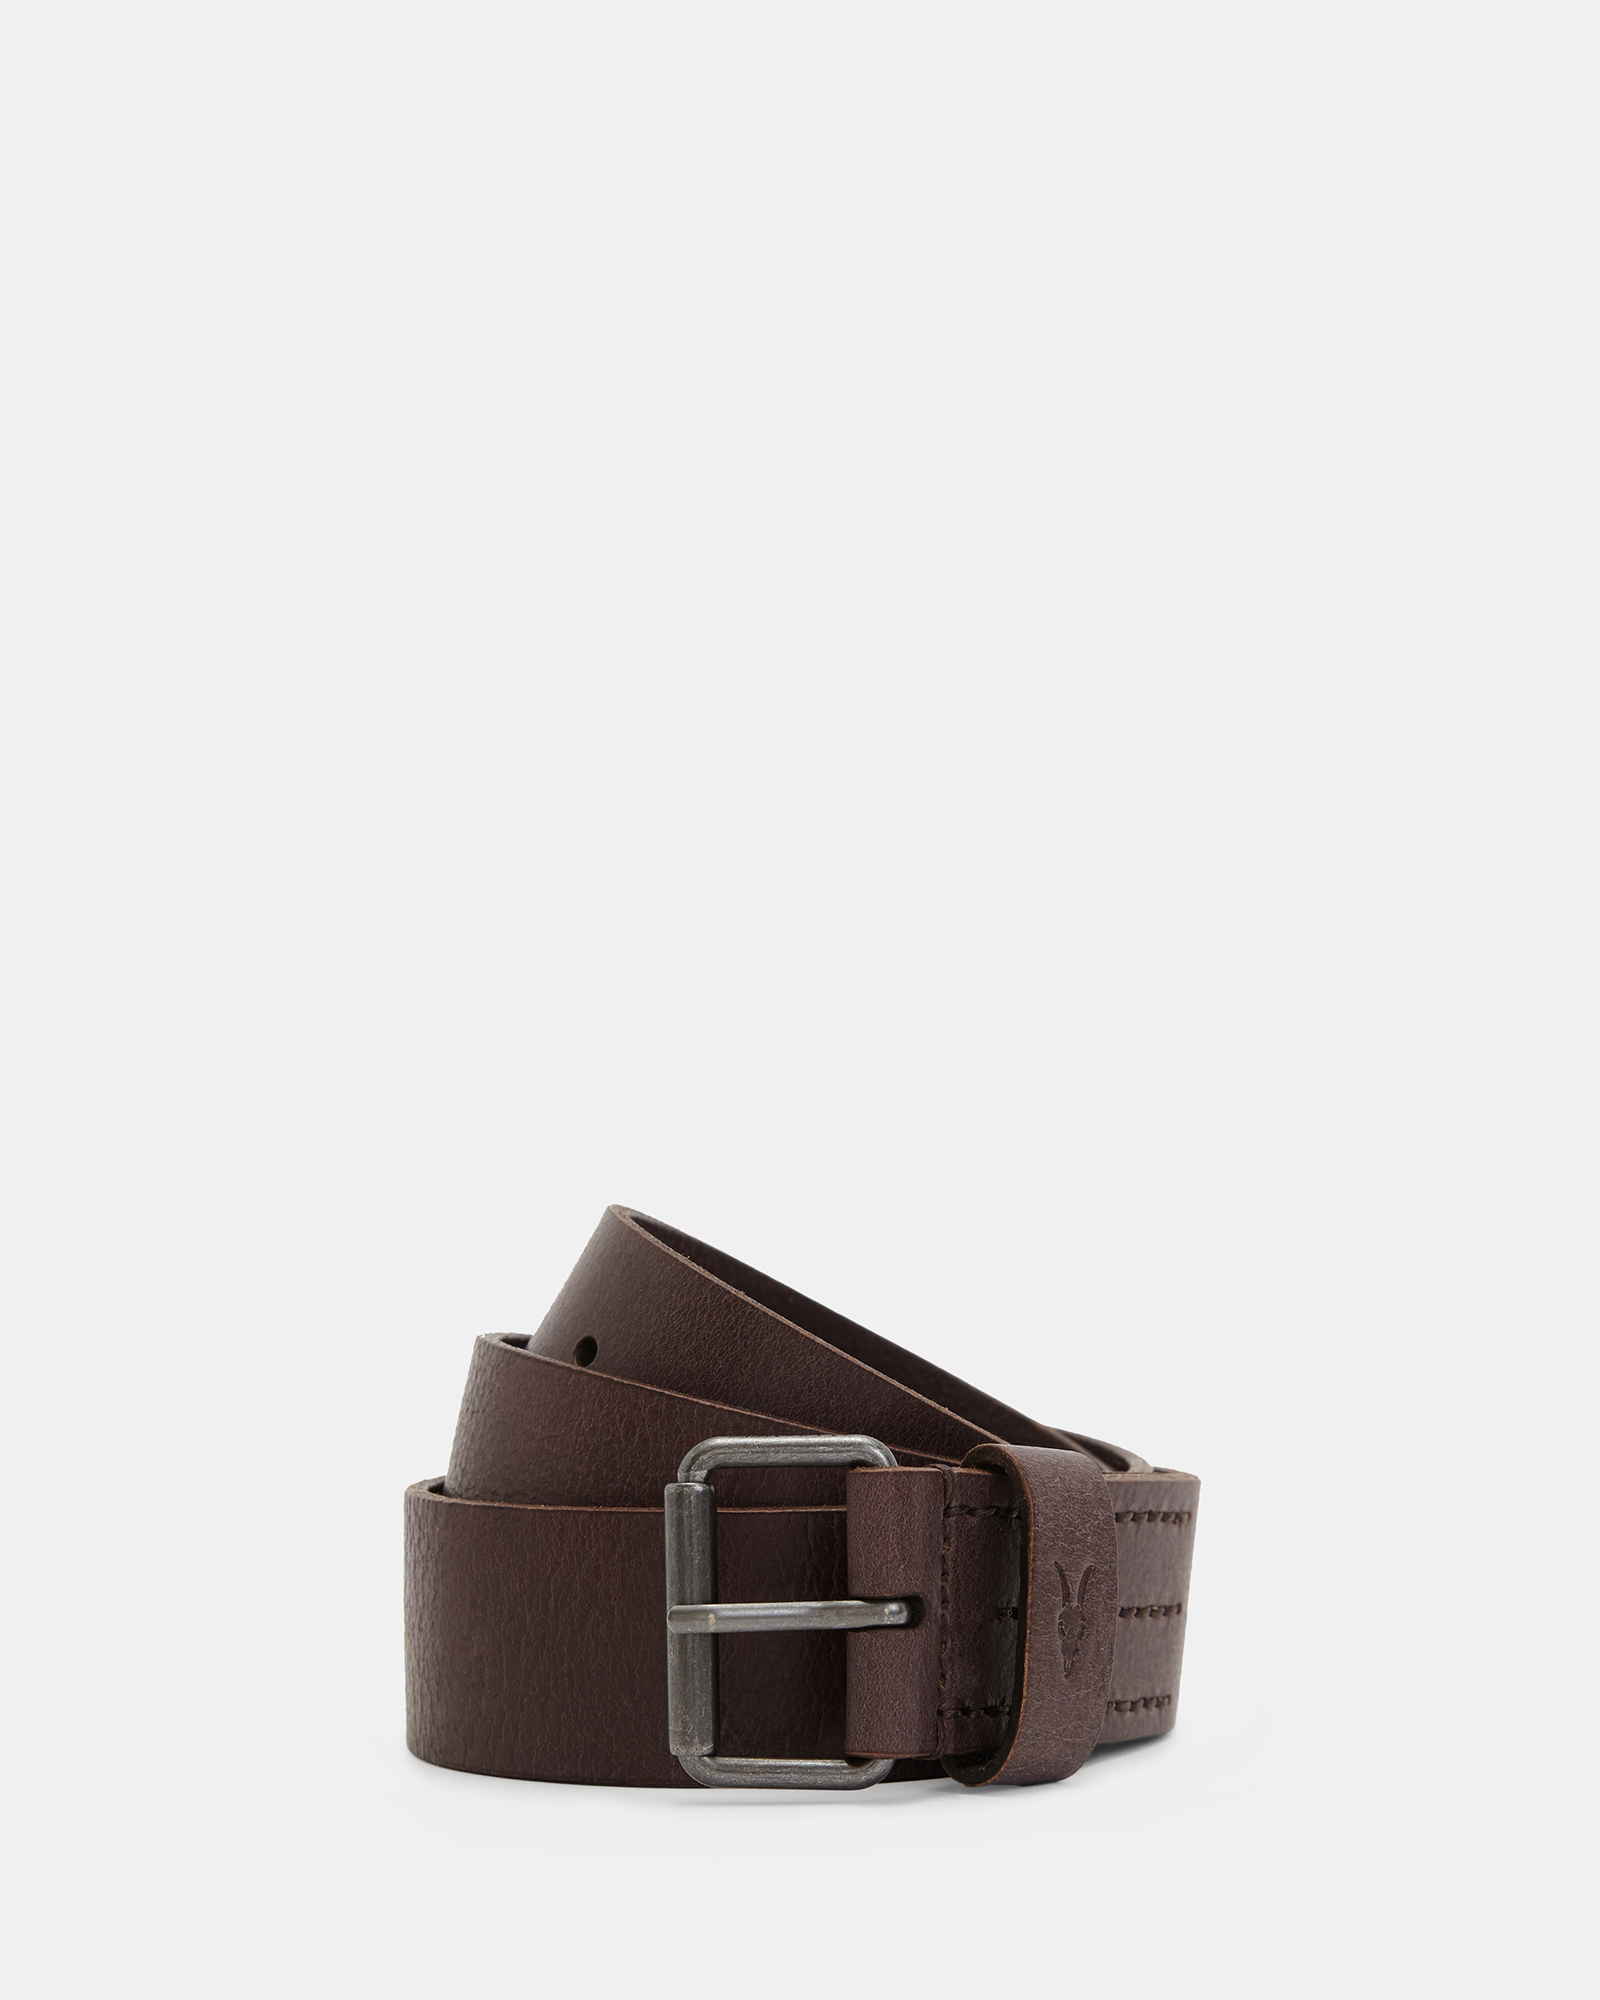 AllSaints Men's Leather Classic Dunston Belt, Brown, Size: 34